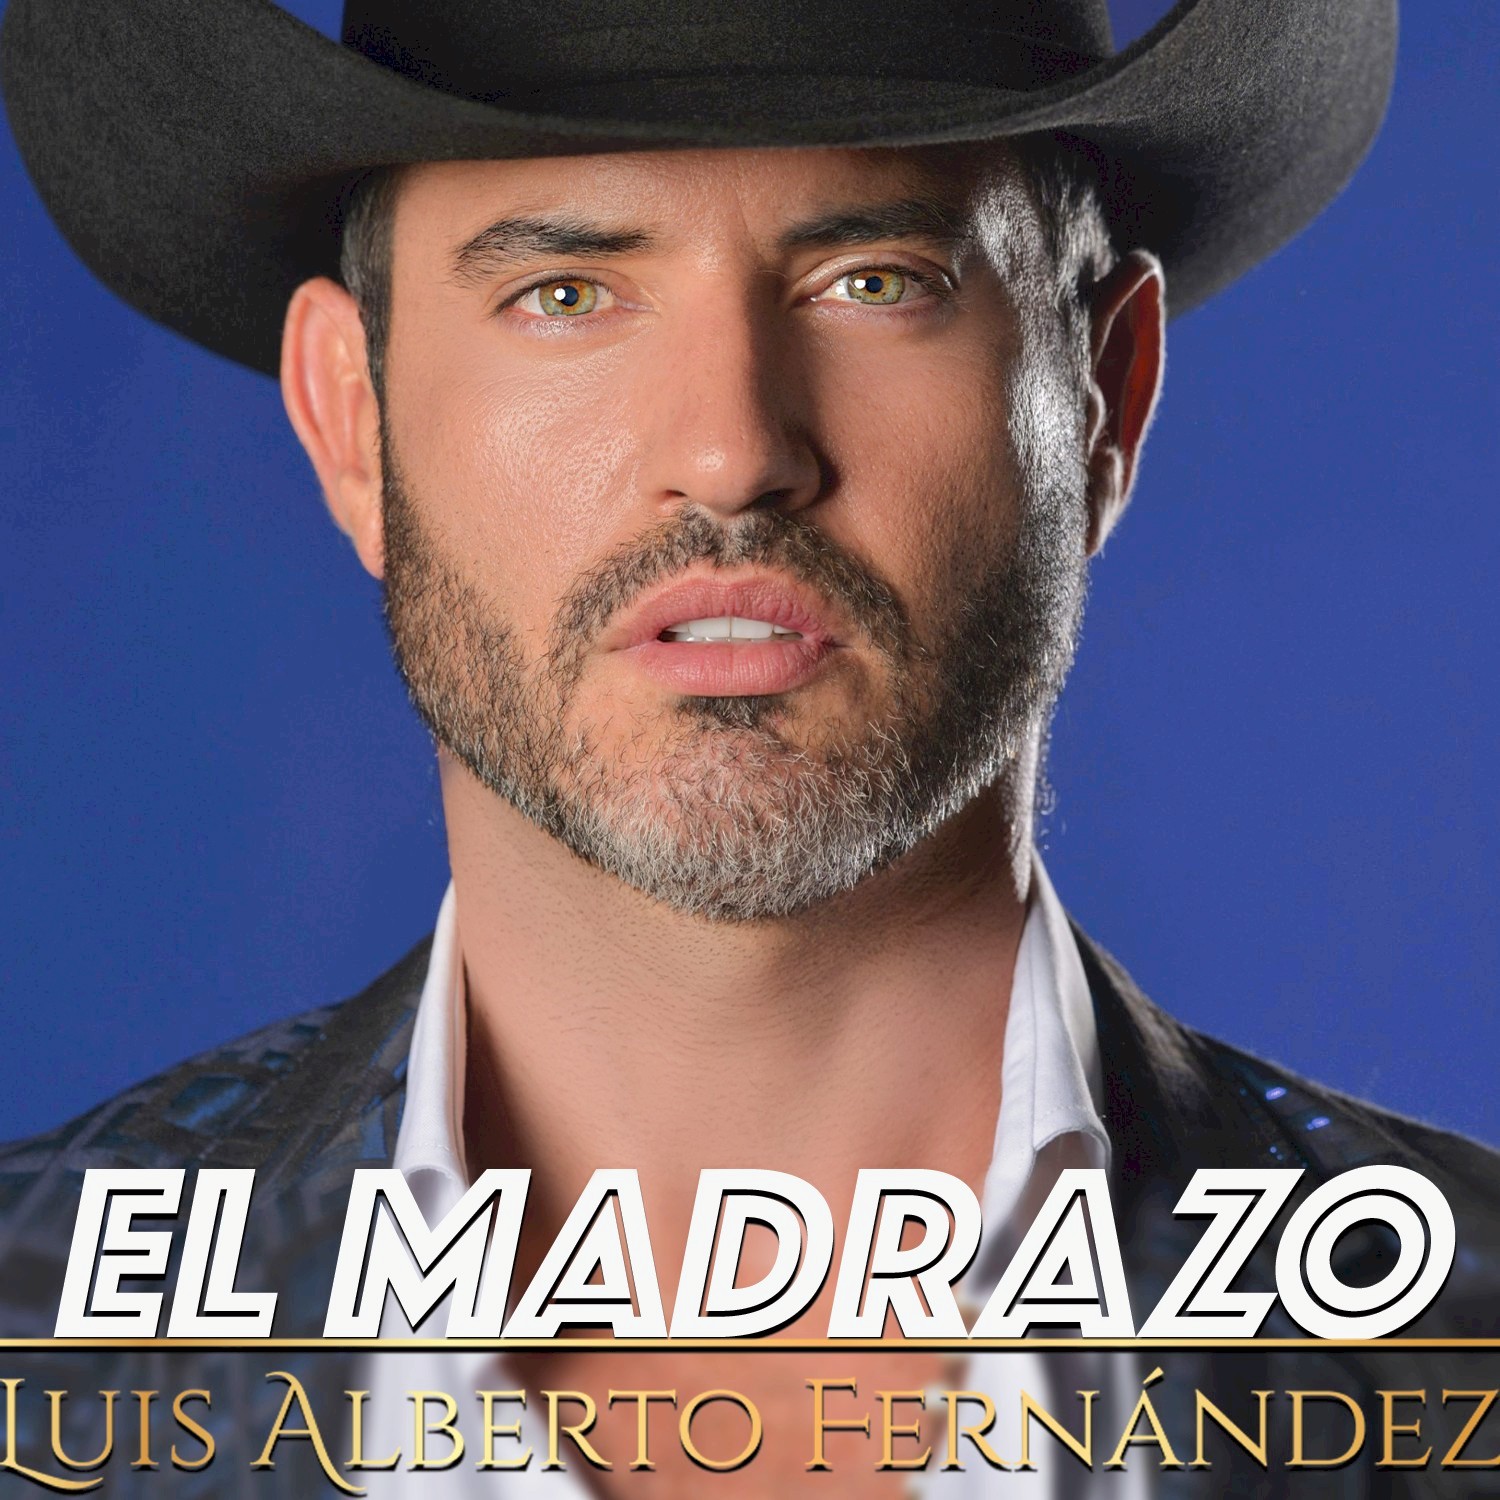 LUIS ALBERTO FERNANDEZ lanza nuevo sencillo “El Madrazo”